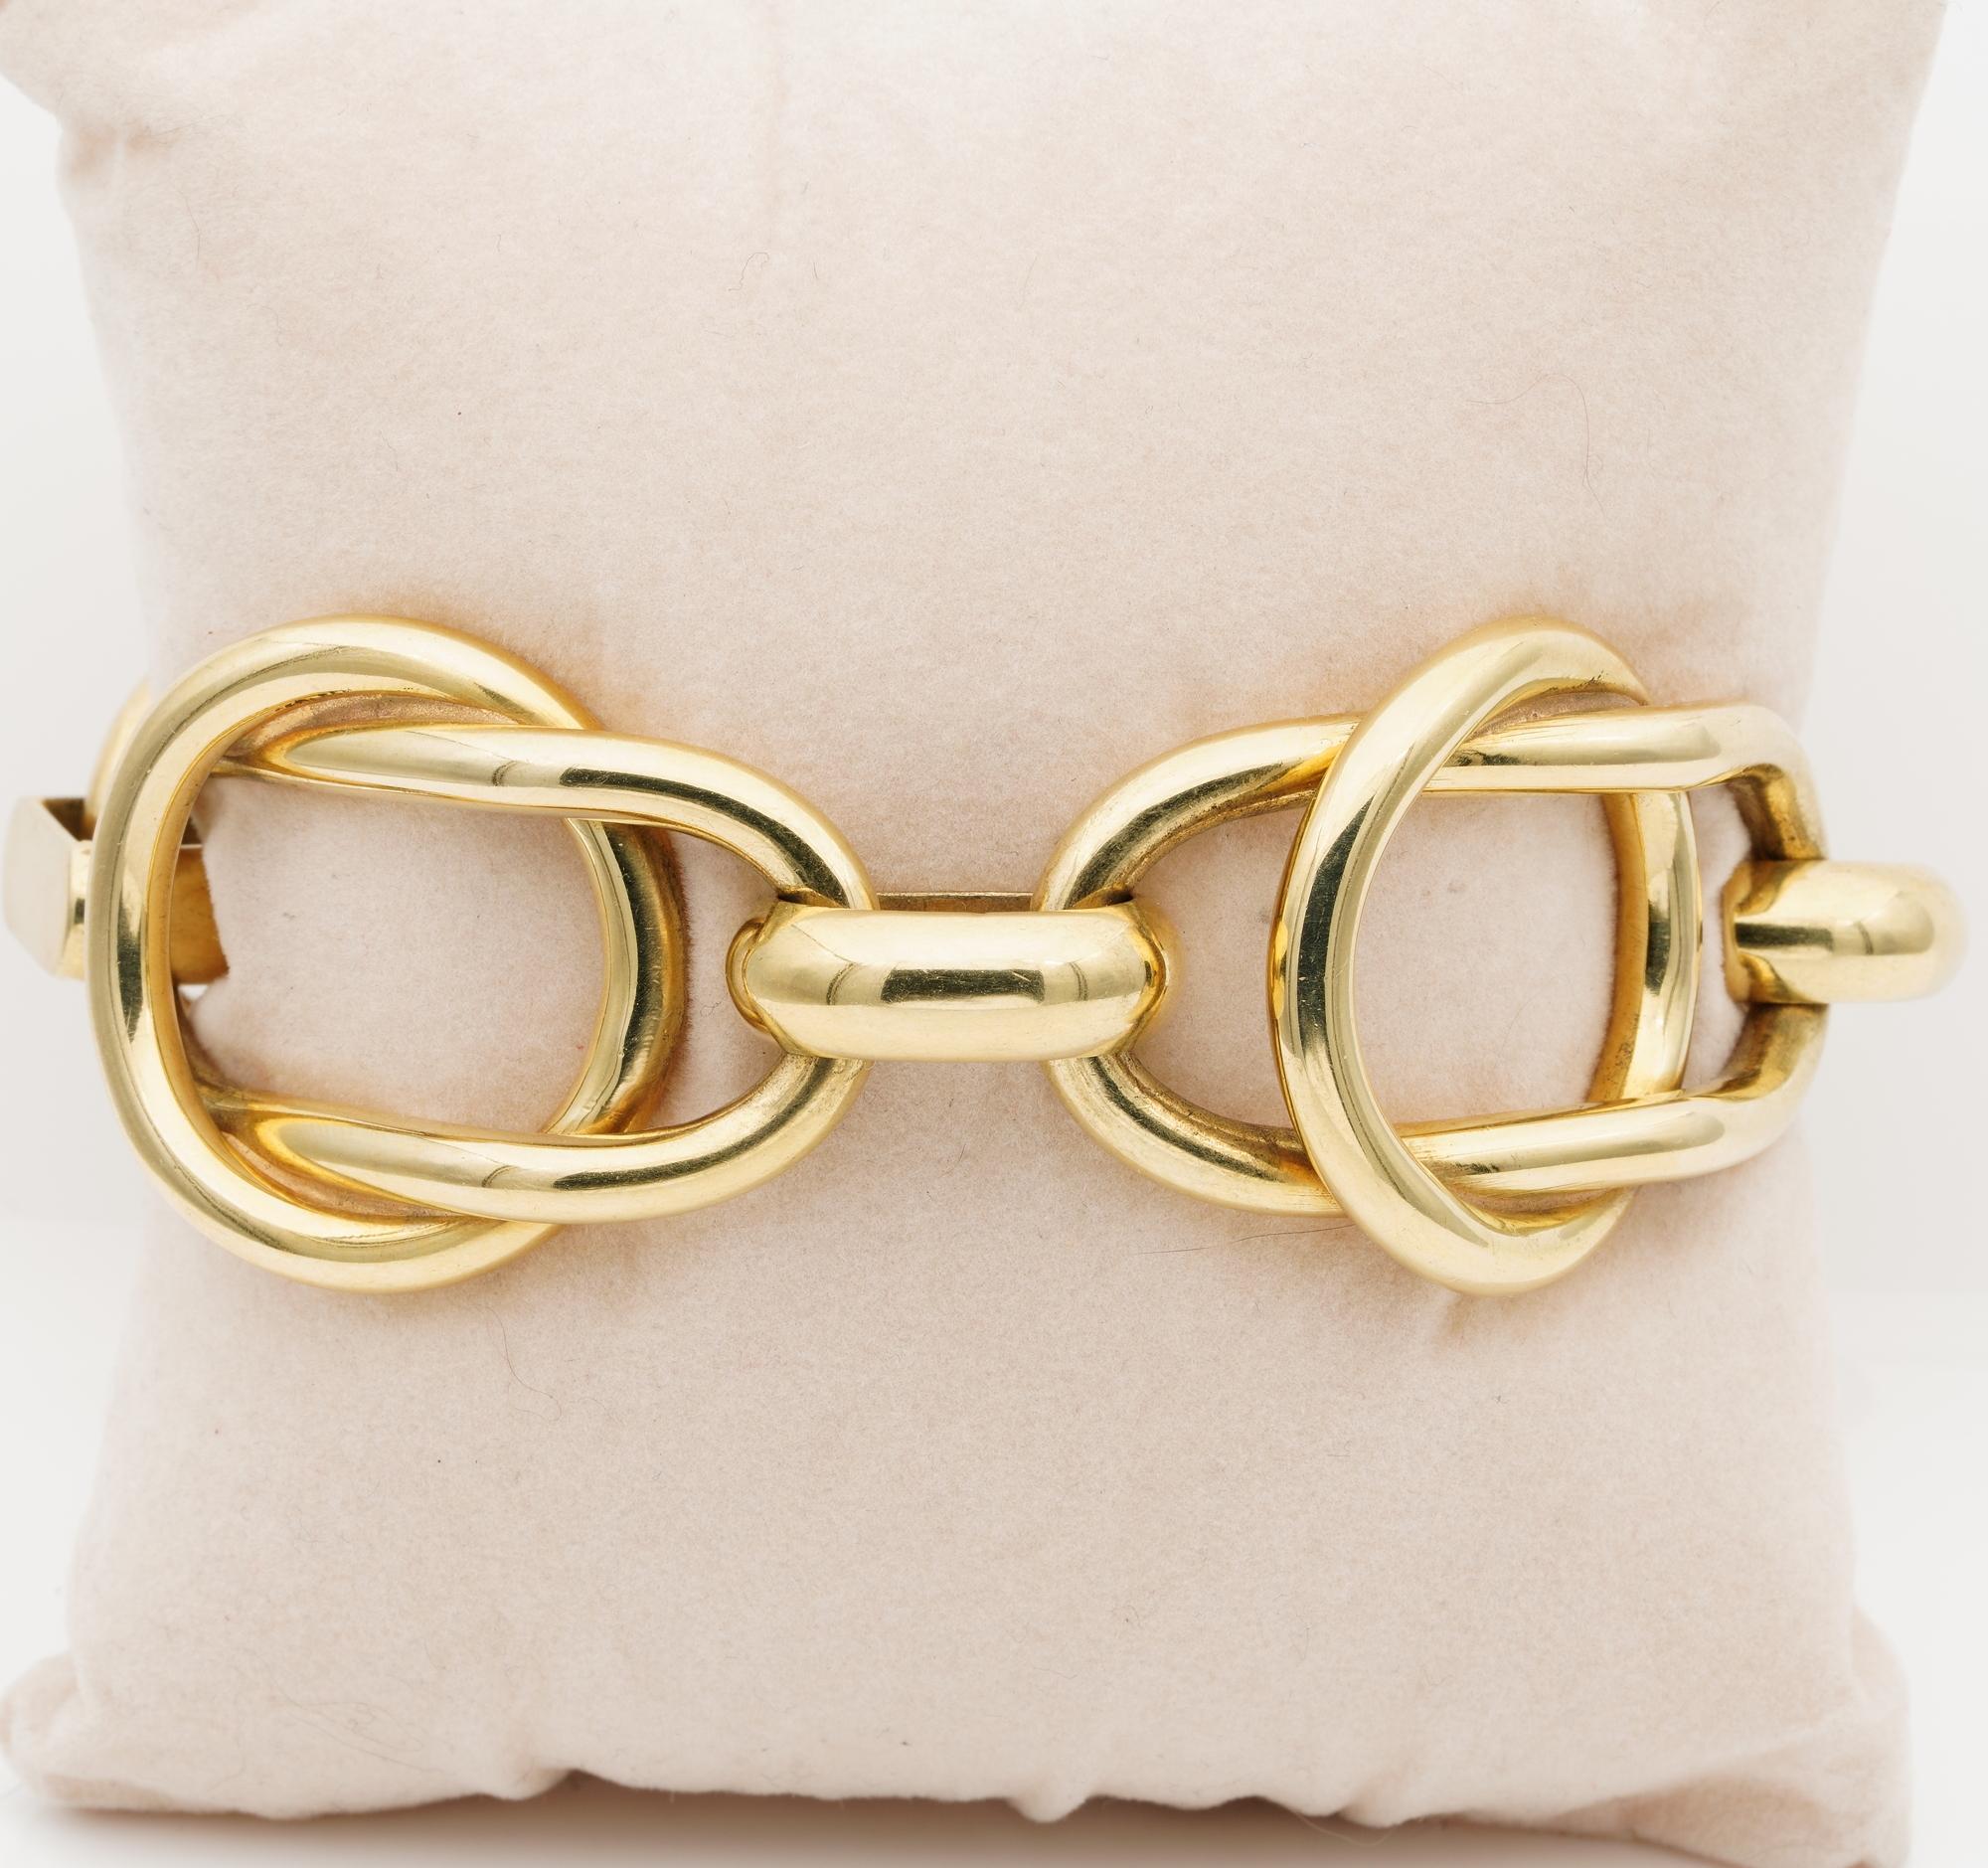 Gold genießen
Diese sehr einzigartige fancy Link italienischen Vintage-Armband ist so eine schöne Sache, um auf Jeans oder formale Outfit tragen
Erhebliches Gewicht von 62,8 Gramm massivem 18-karätigem Gold, stilvolle Kombination aus zwei Formen von